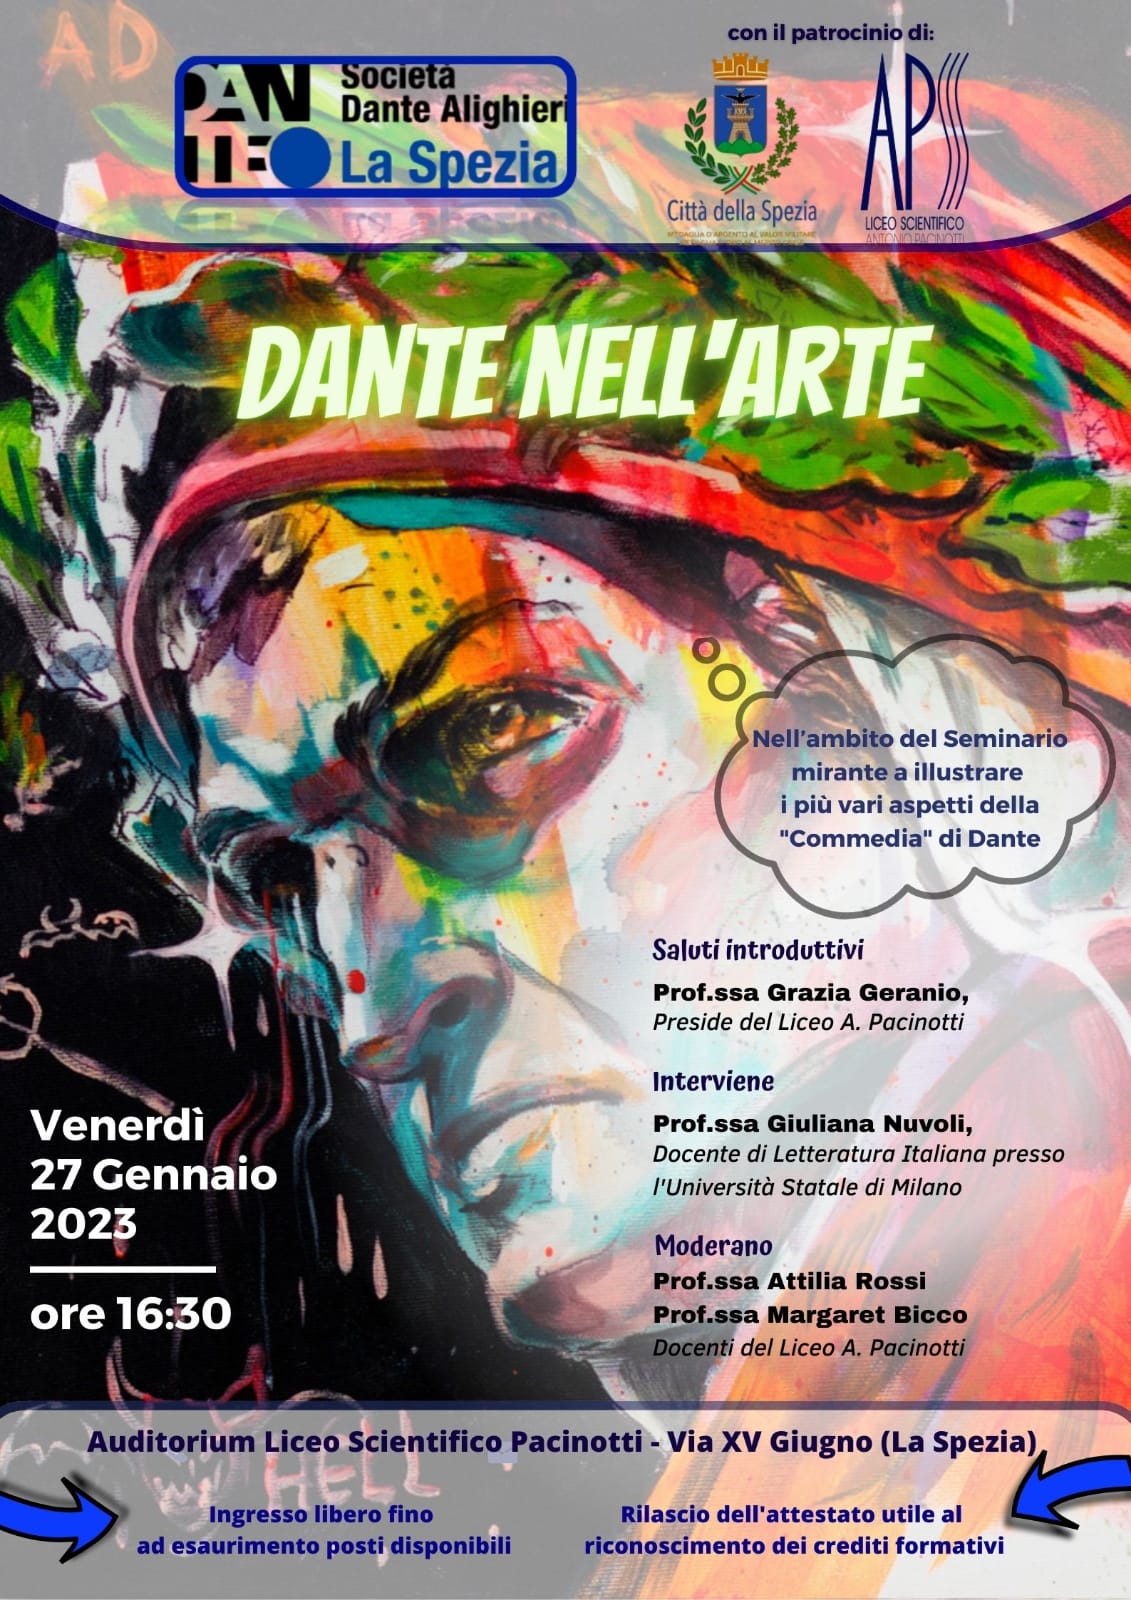 Giuliana Nuvoli, “Dante nell’arte”, Auditorium Liceo Scientifico ‘Pacinotti’, La Spezia, 27 gennaio 2023, ore 16.30